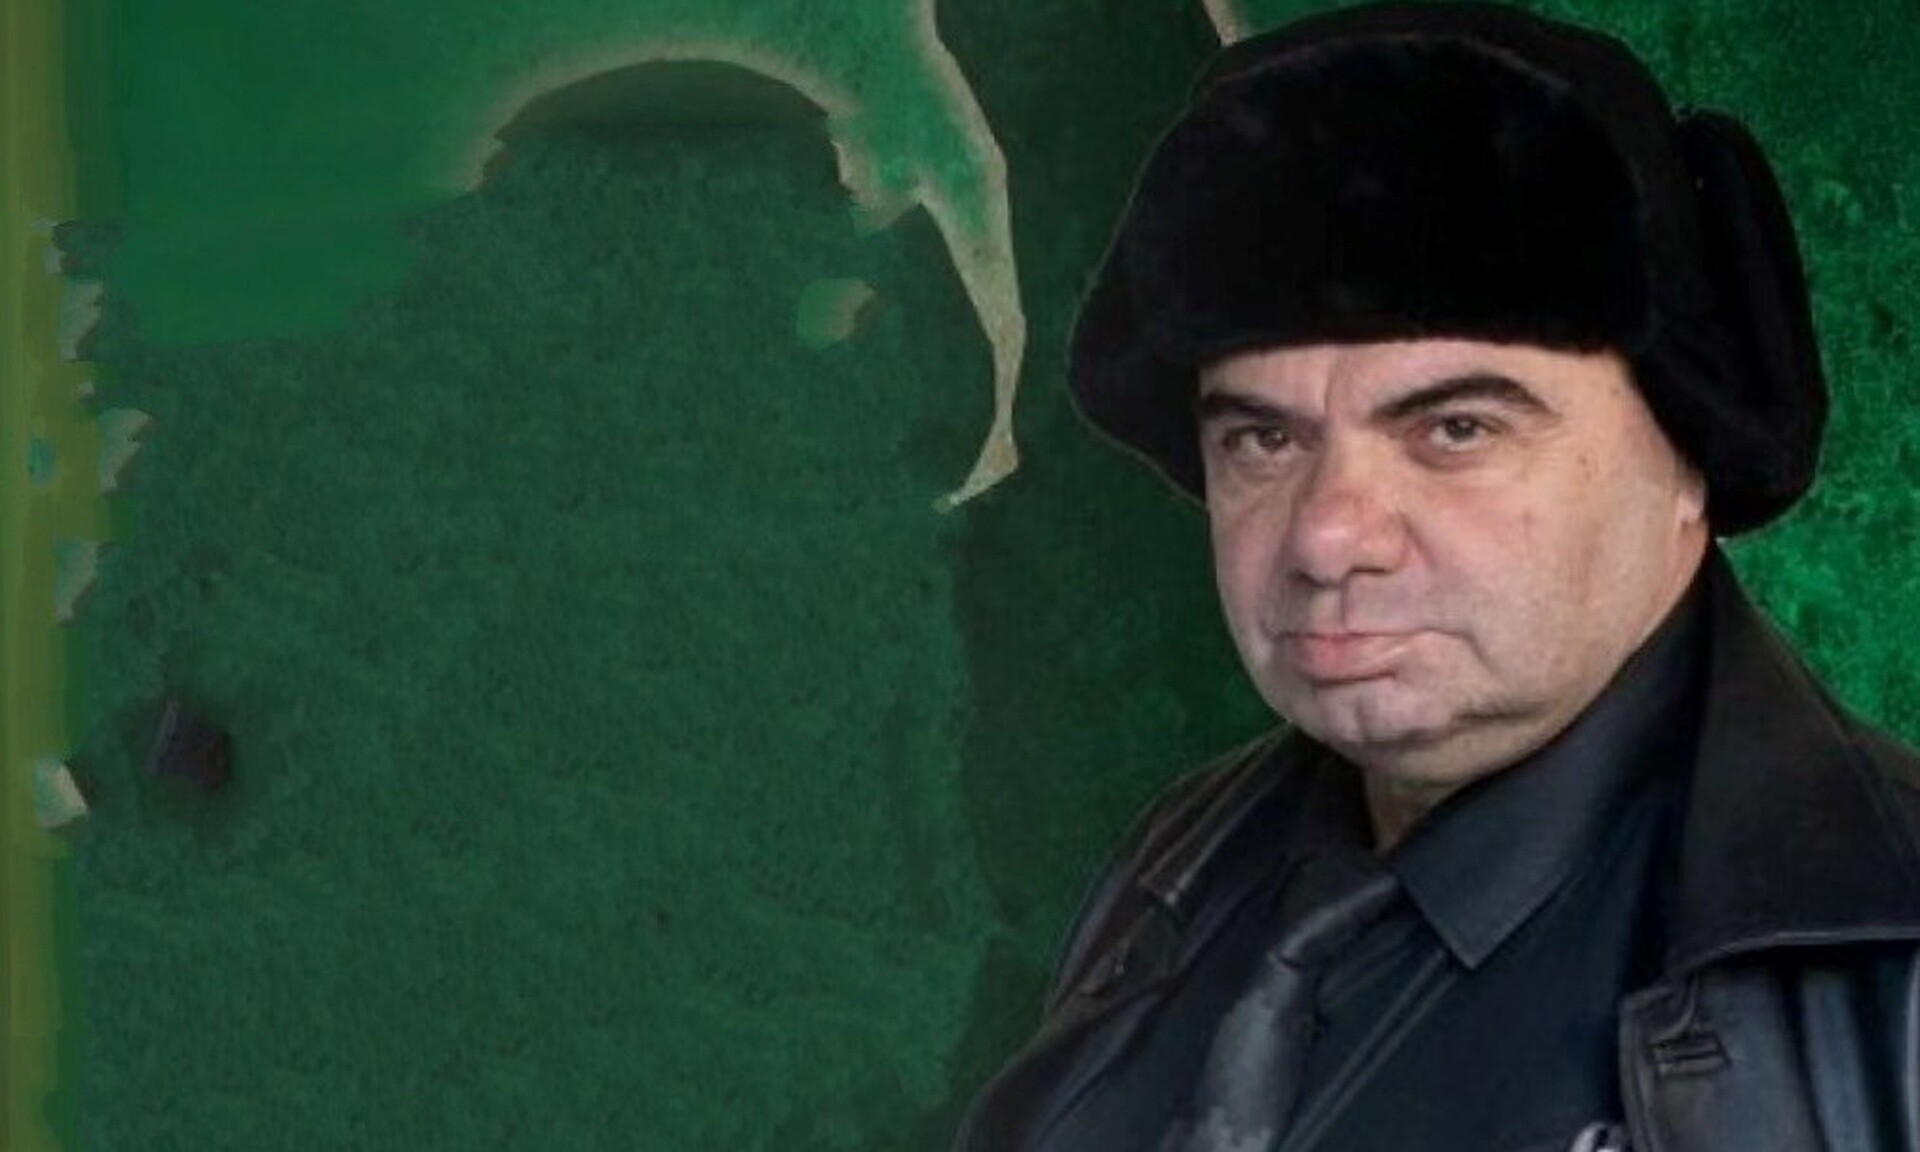 Πέθανε ο Μανώλης Γεωργιάδης: Ο ηθοποιός «έσβησε» πάνω στη σκηνή την ώρα που έπαιζε